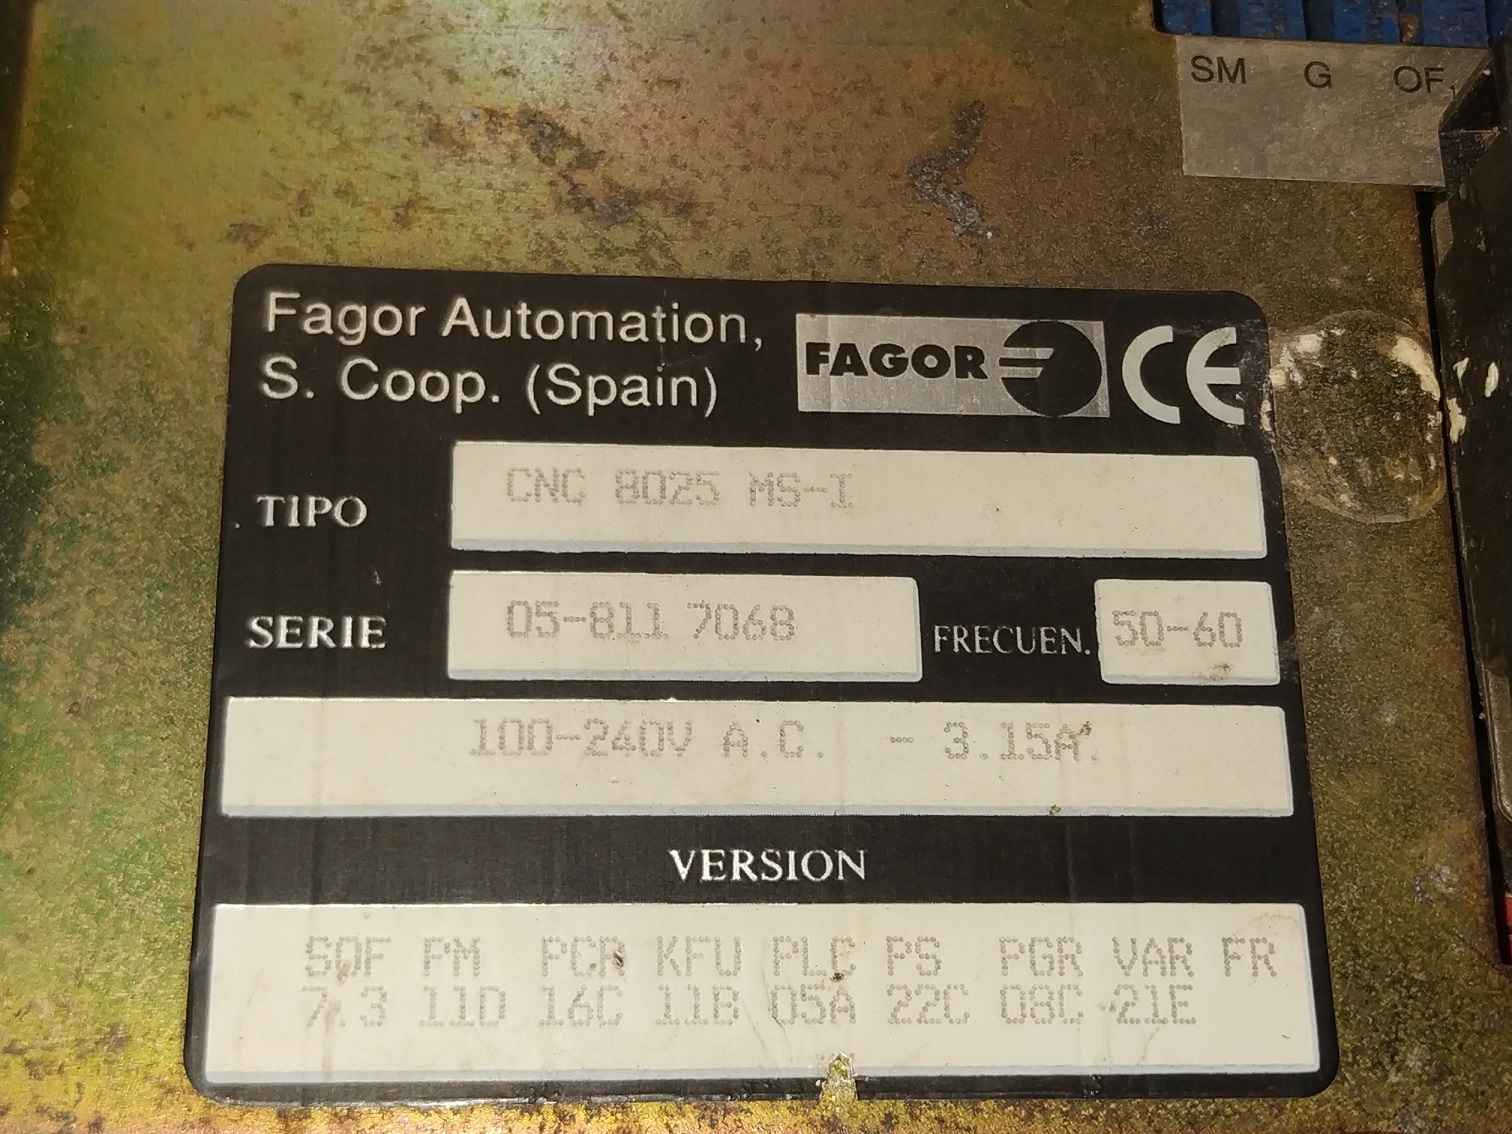 FAGOR HMI CNC8025MS-I